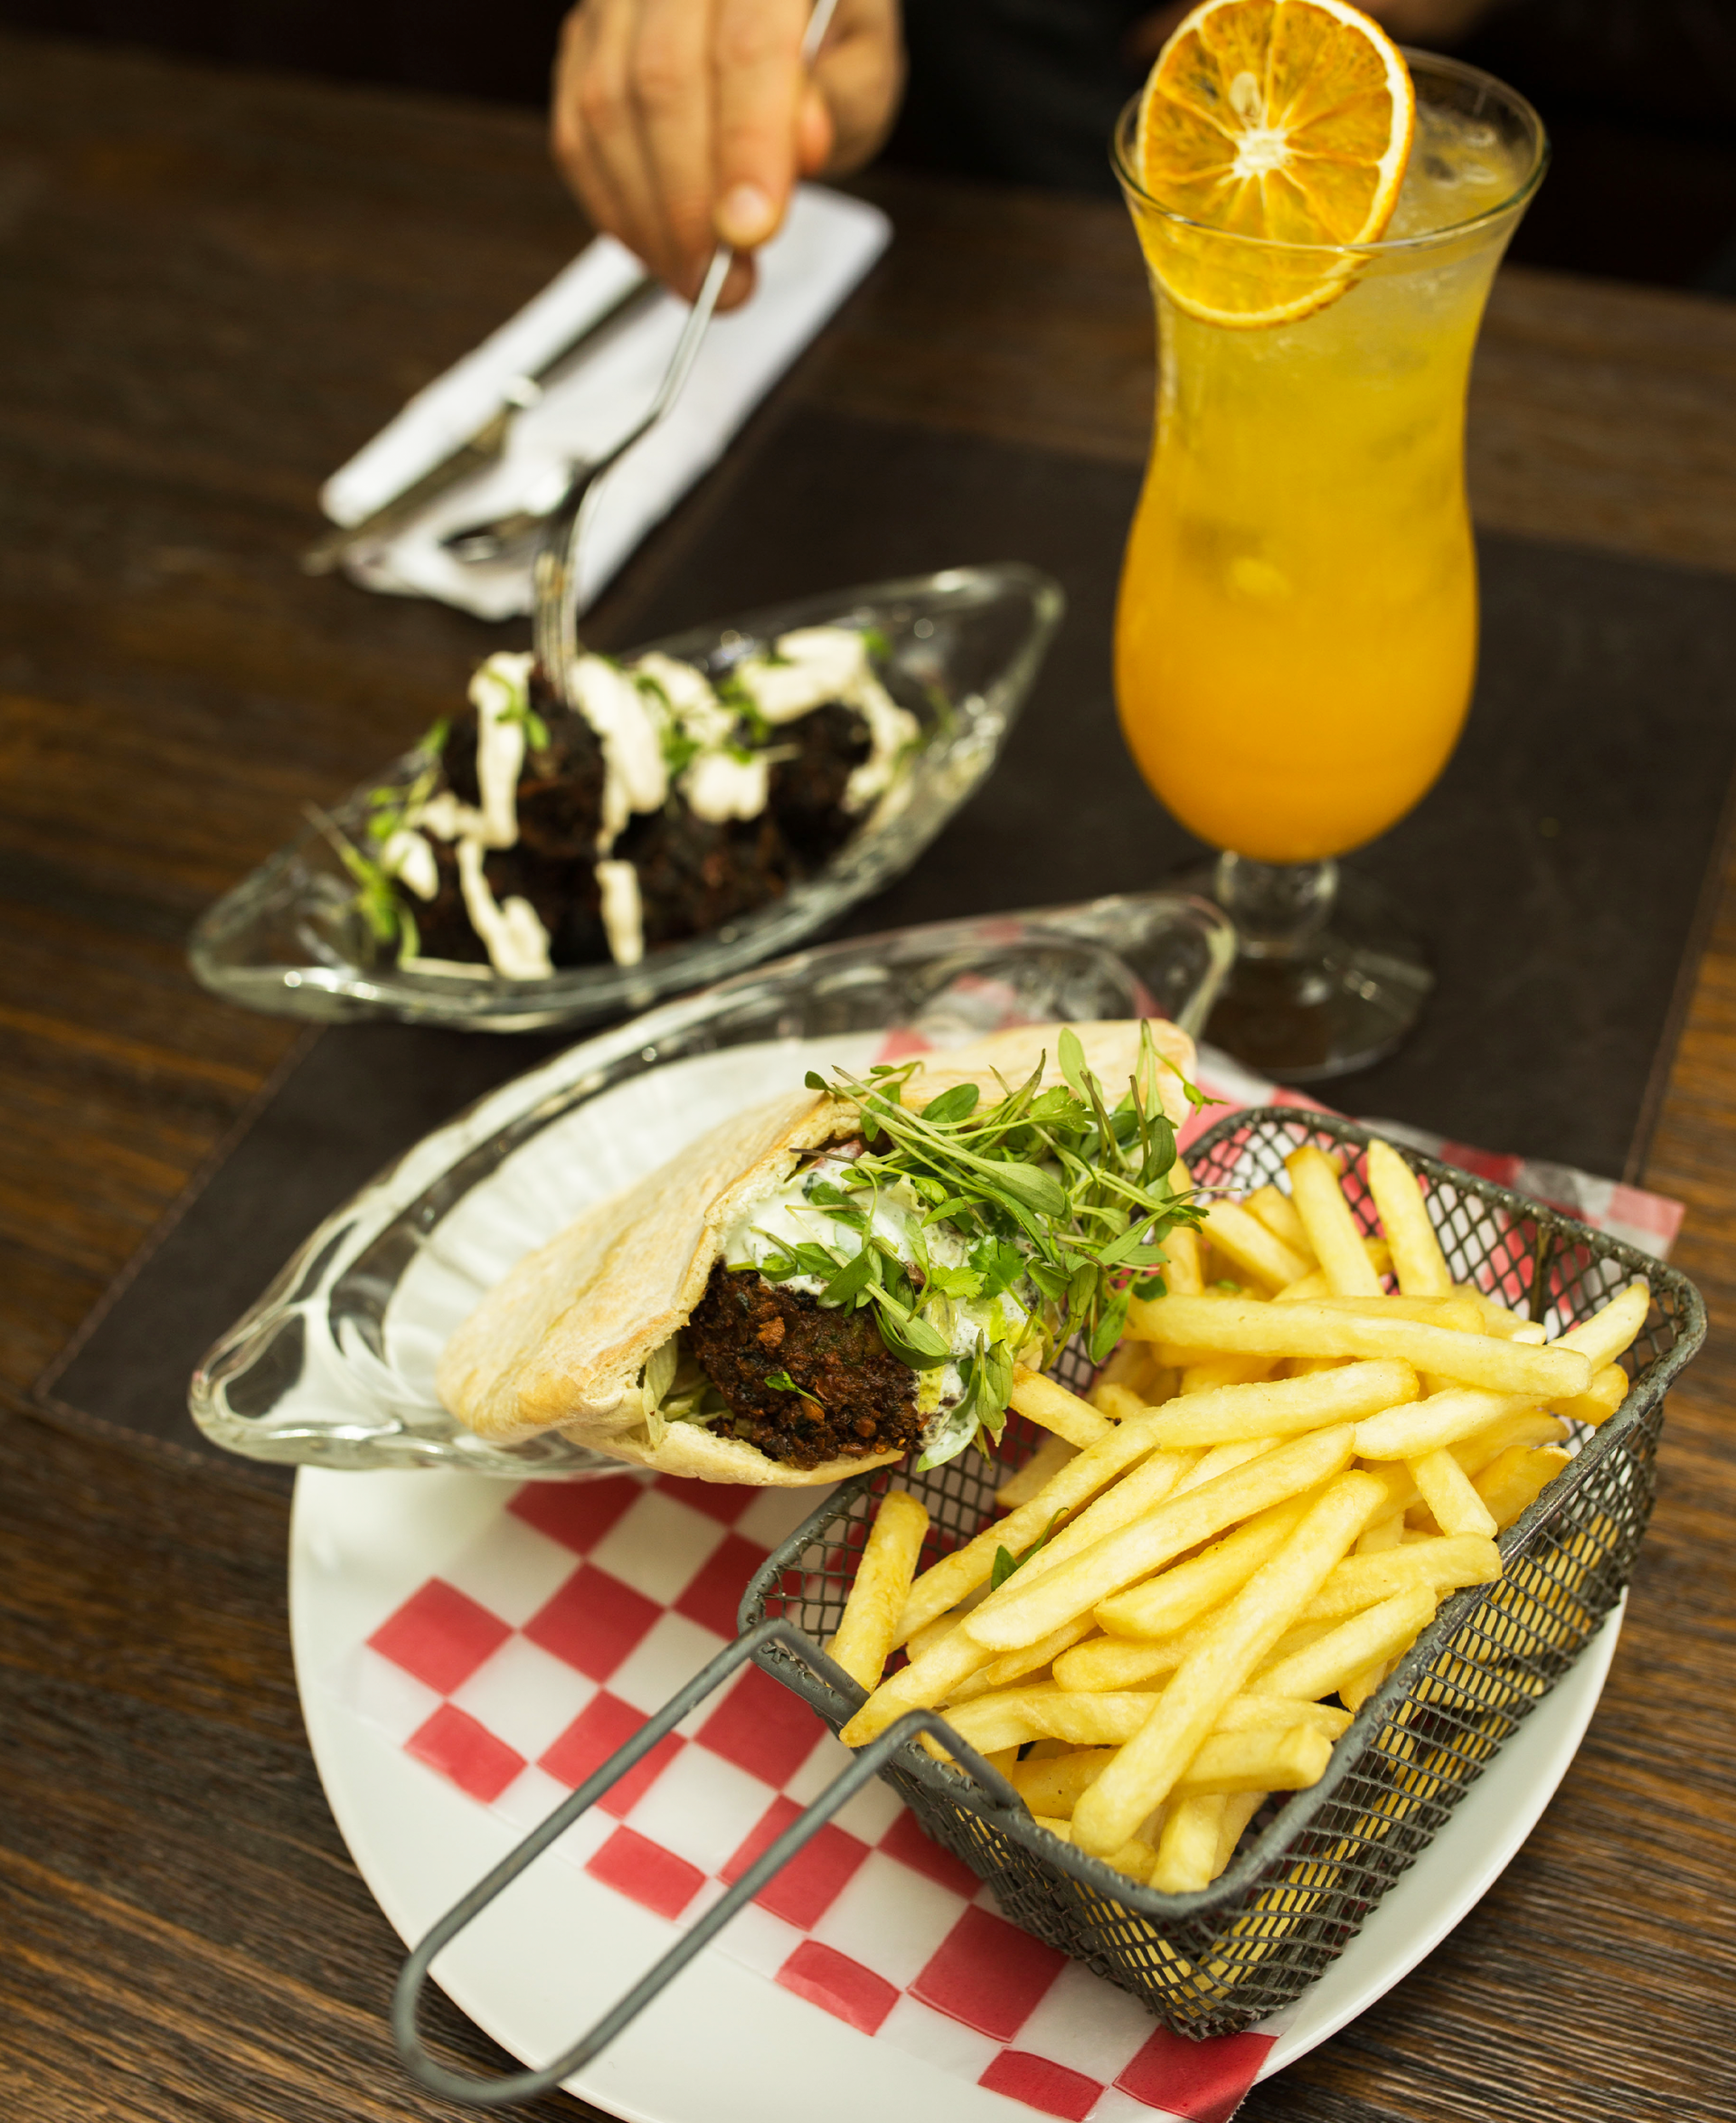 Un plato de comida con patatas fritas y una bebida sobre una mesa.